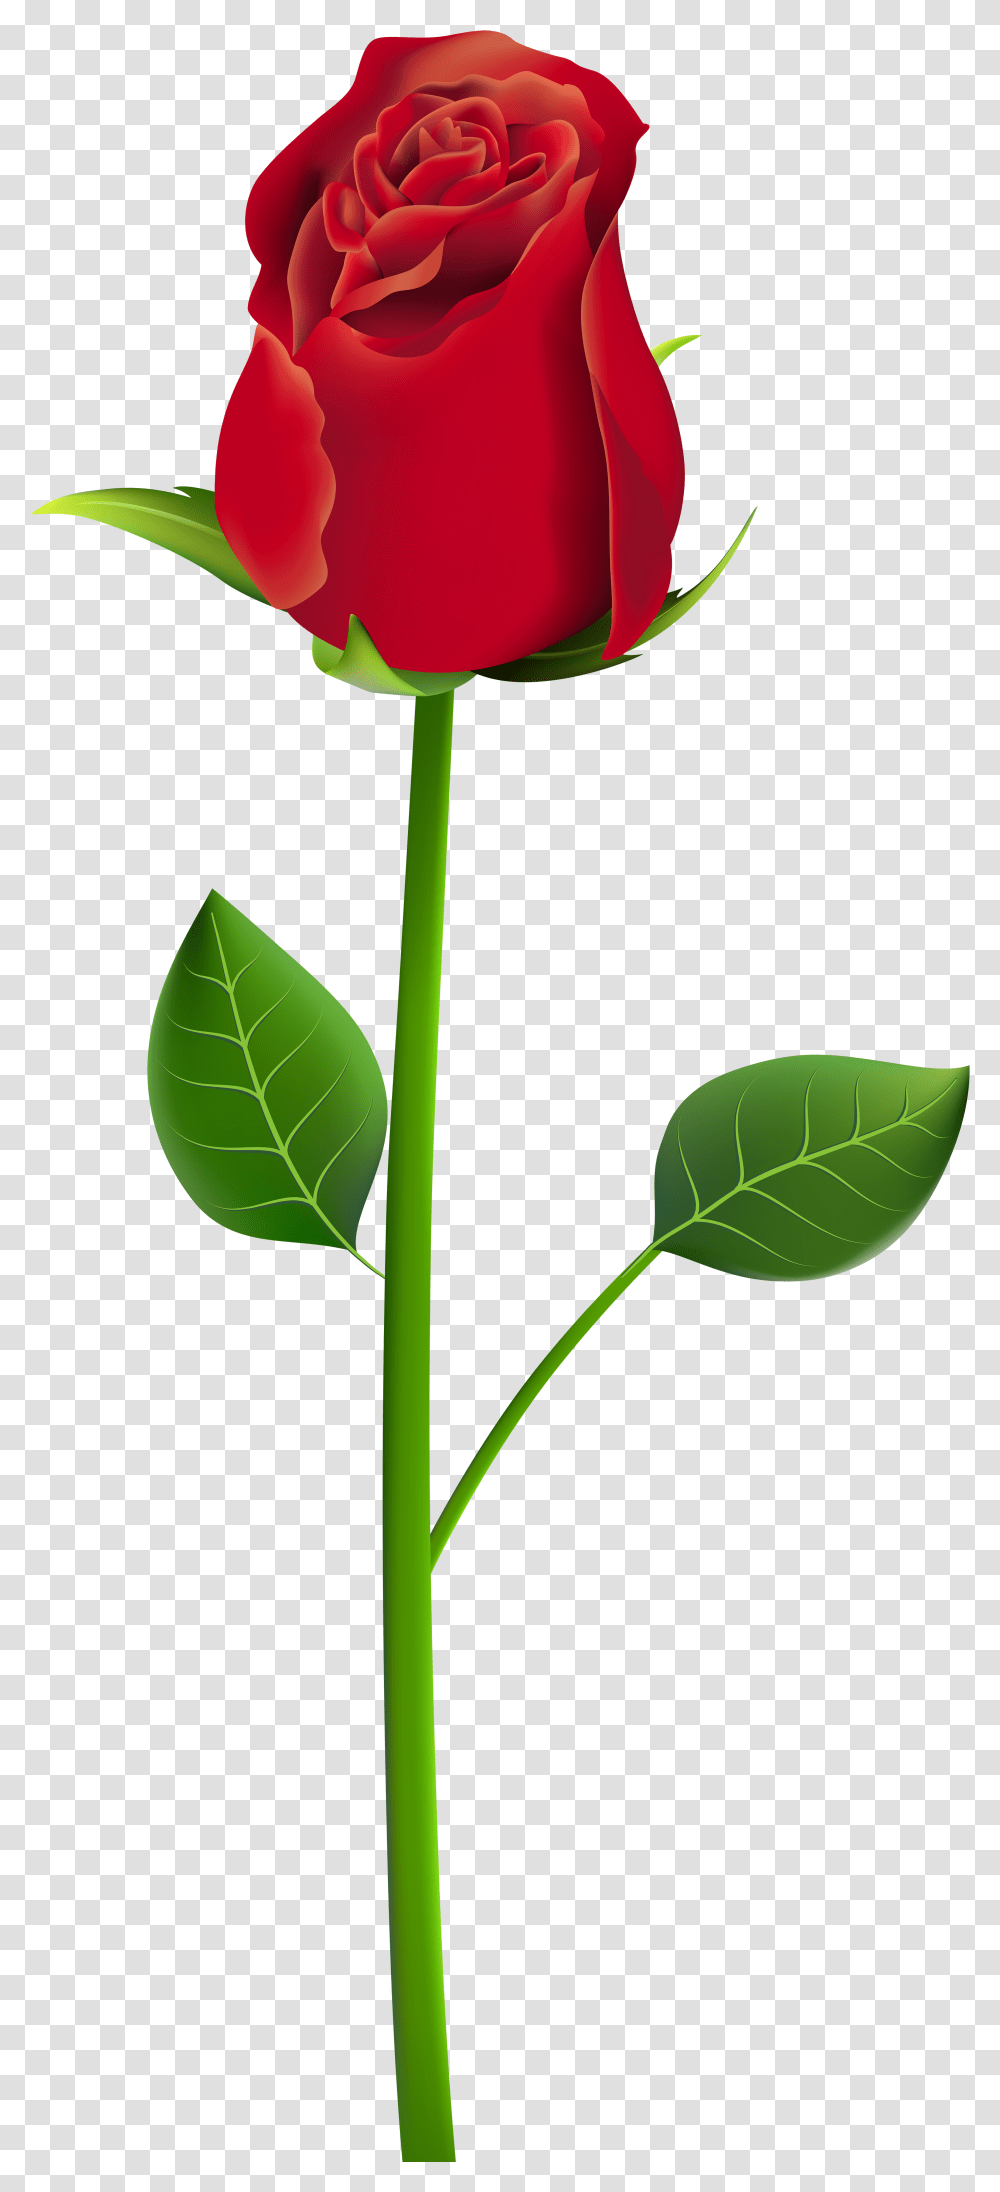 Download Rose Clip Art Rose Flowers Picsart, Plant, Blossom, Leaf, Petal Transparent Png